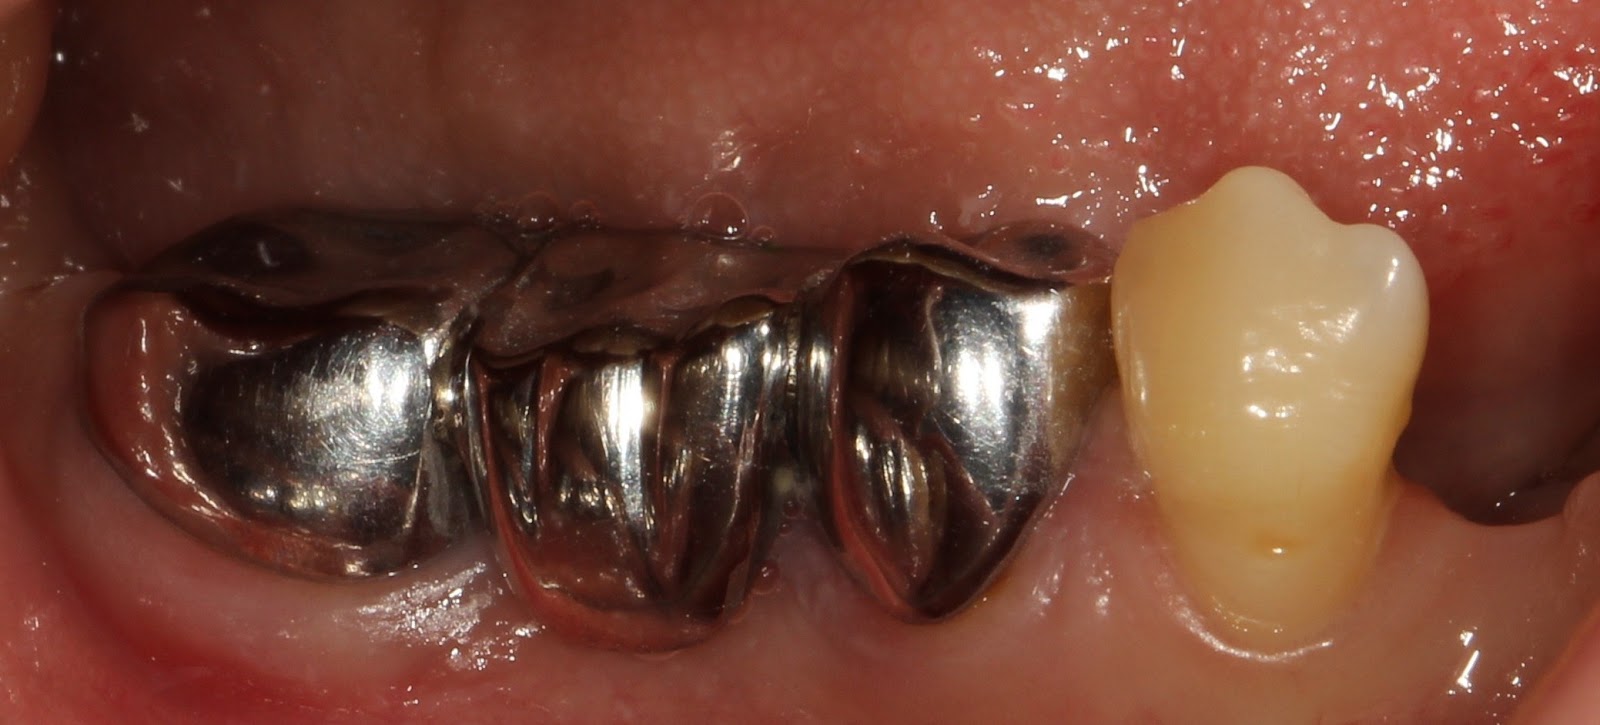 Фото: металлокерамические зубы выглядят эстетичнее, чем металлические